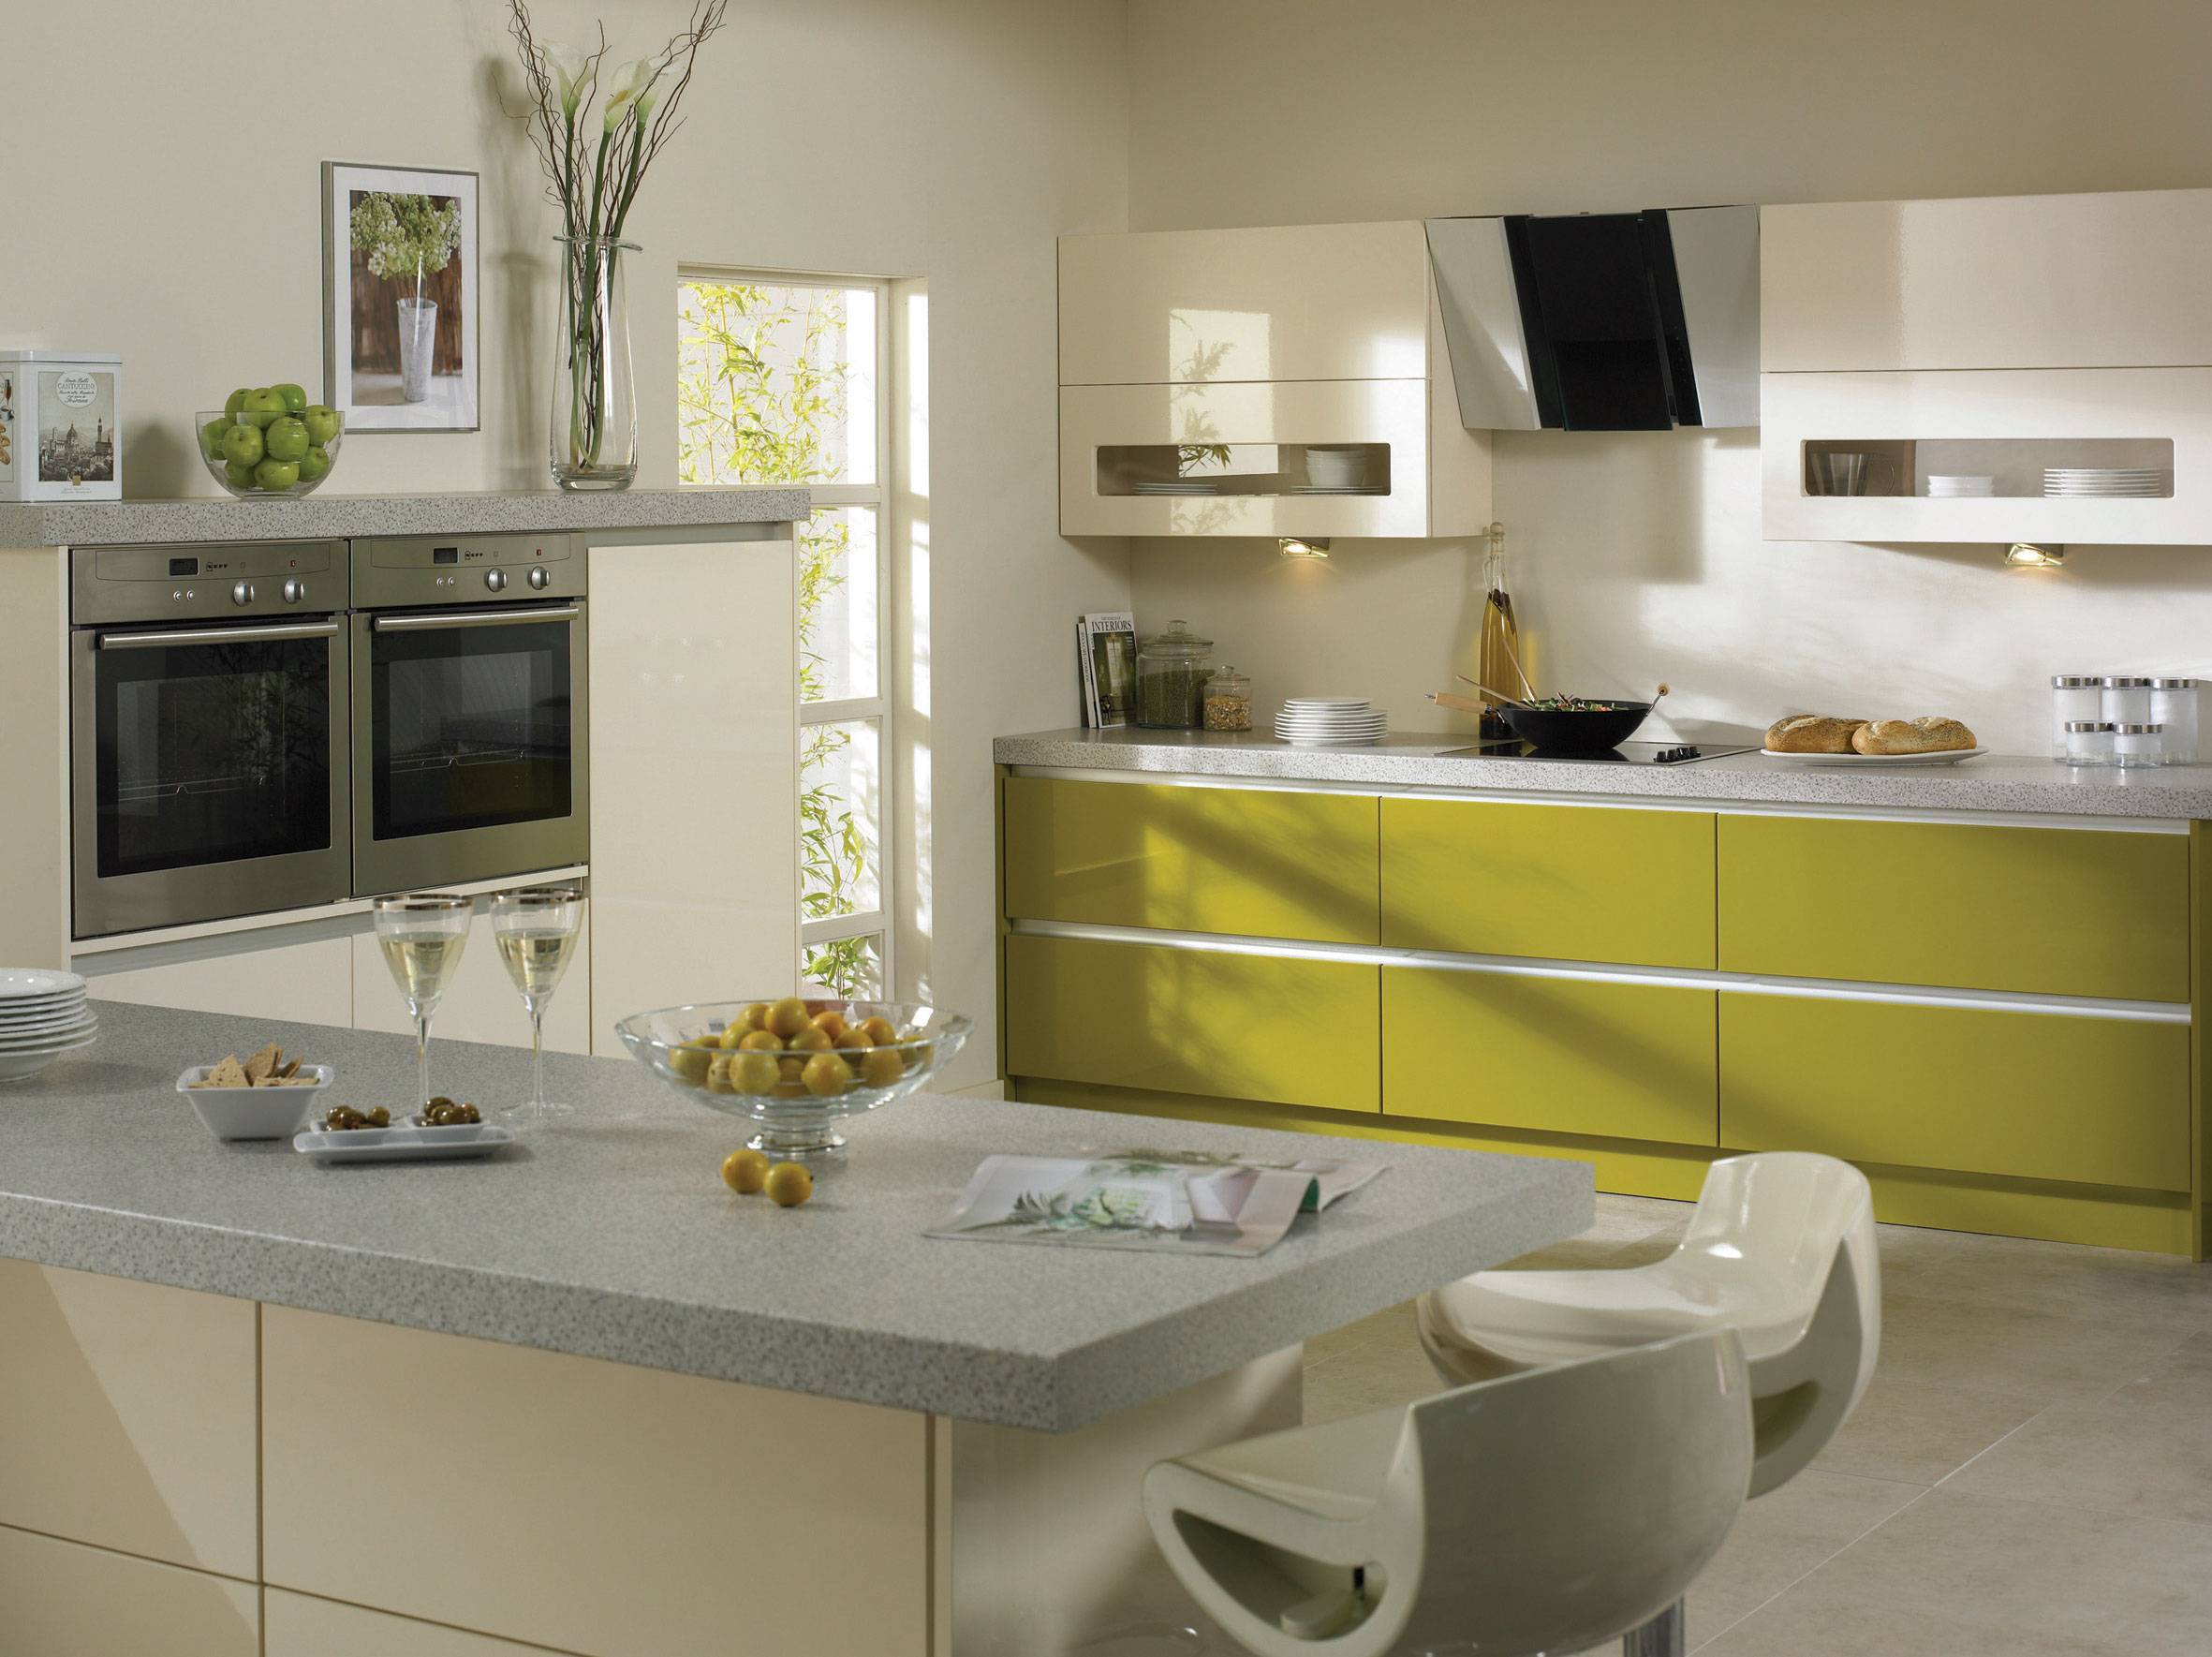 Оливковая кухня: 150 фото идей дизайна и оформления кухни в оливковом цвете